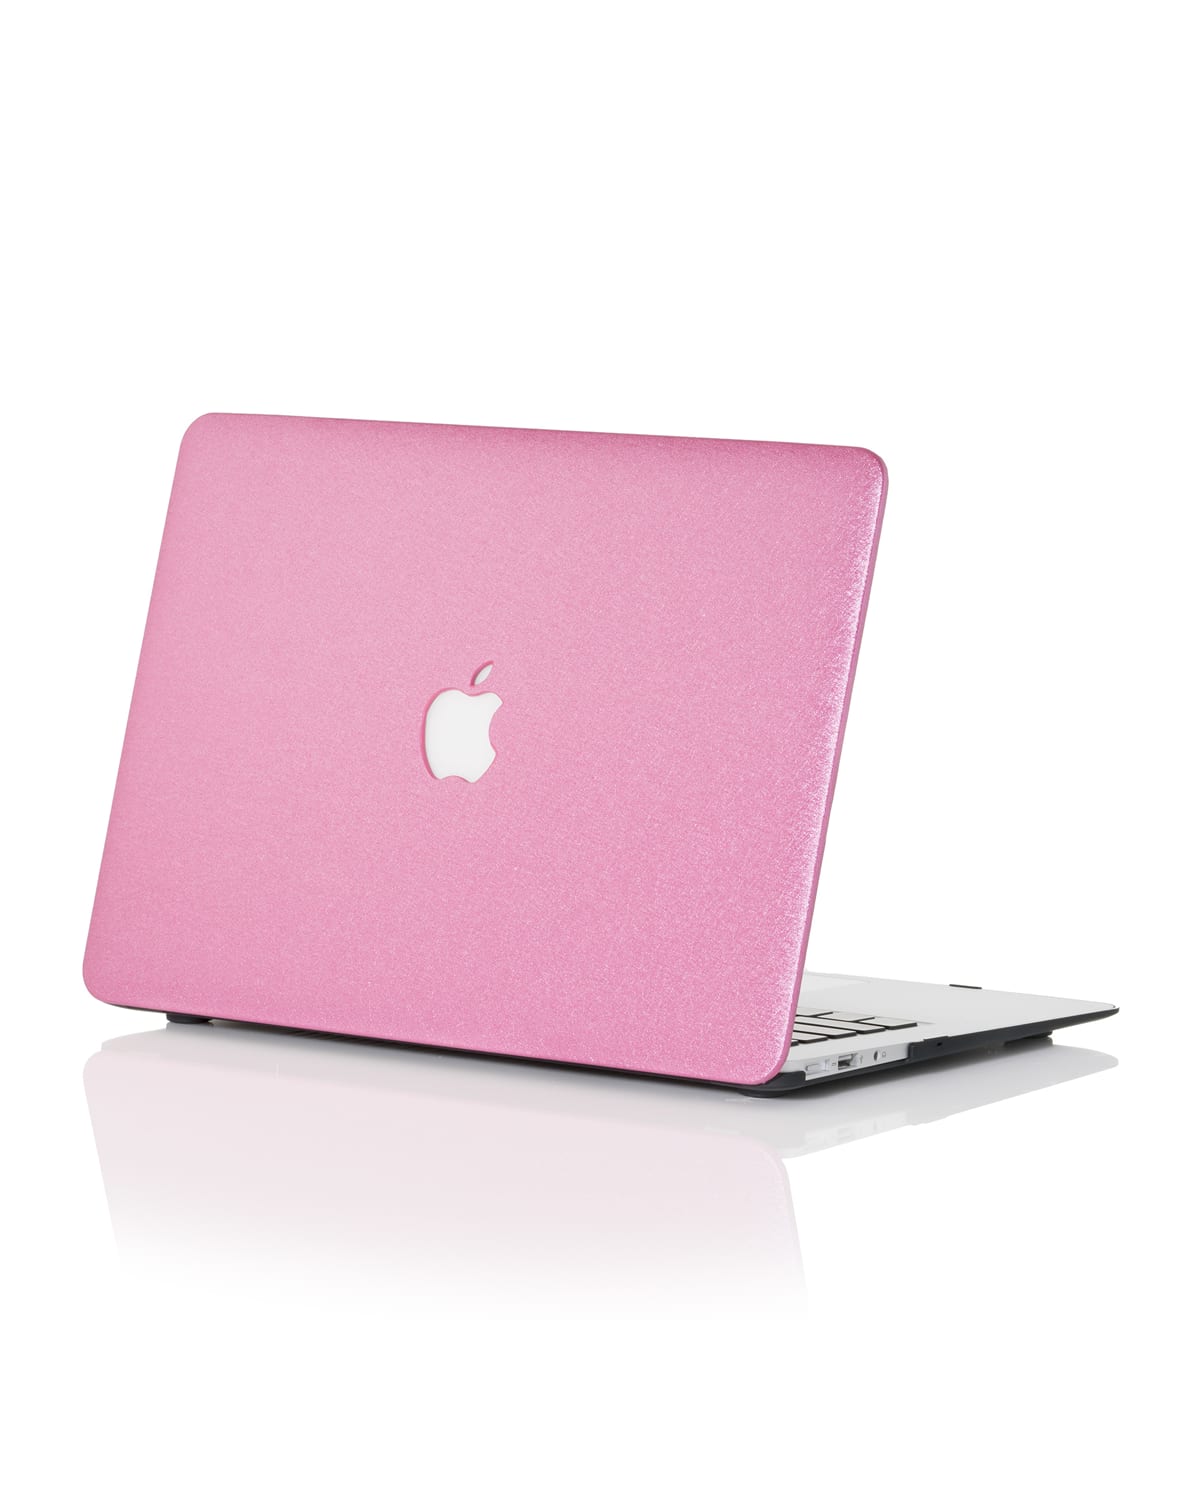 Silky 15" MacBook Pro Case with TouchBar